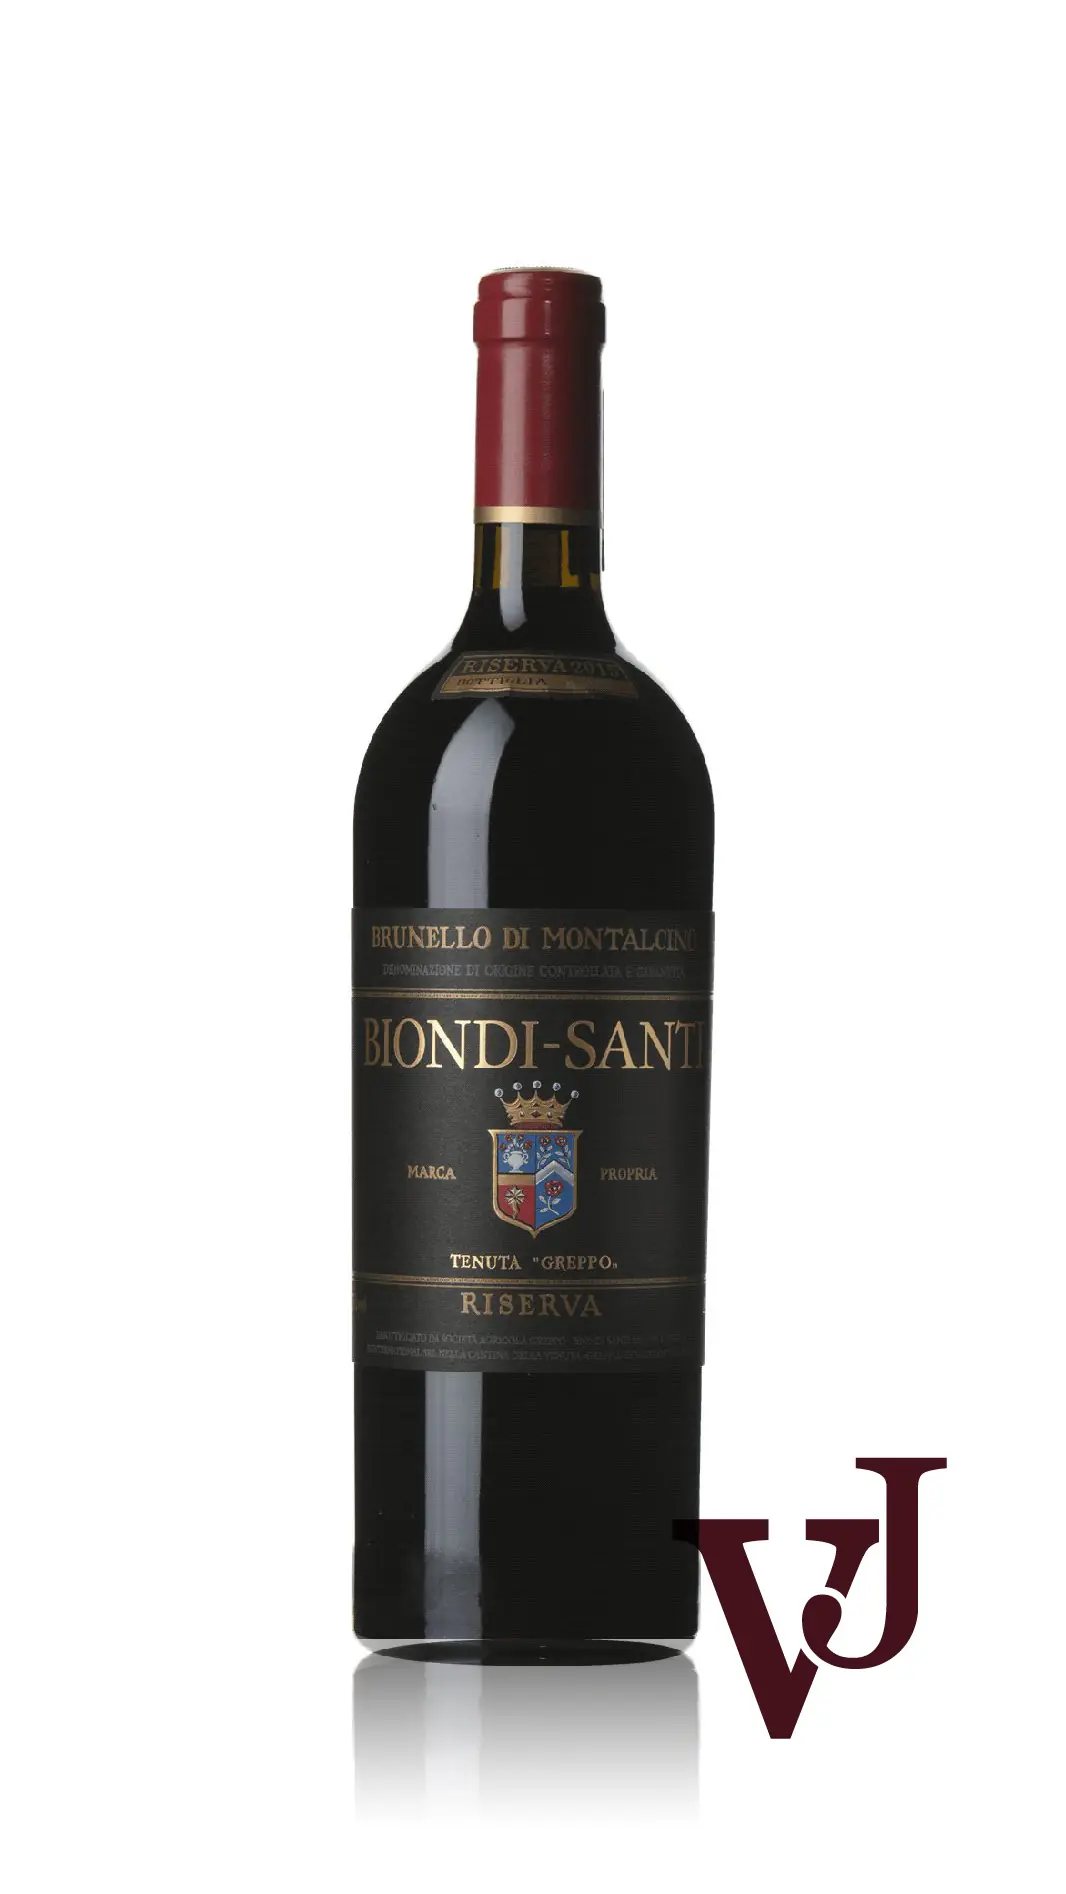 Rött Vin - Brunello di Montalcino Riserva artikel nummer 9490901 från producenten Biondi-Santi från området Italien - Vinjournalen.se